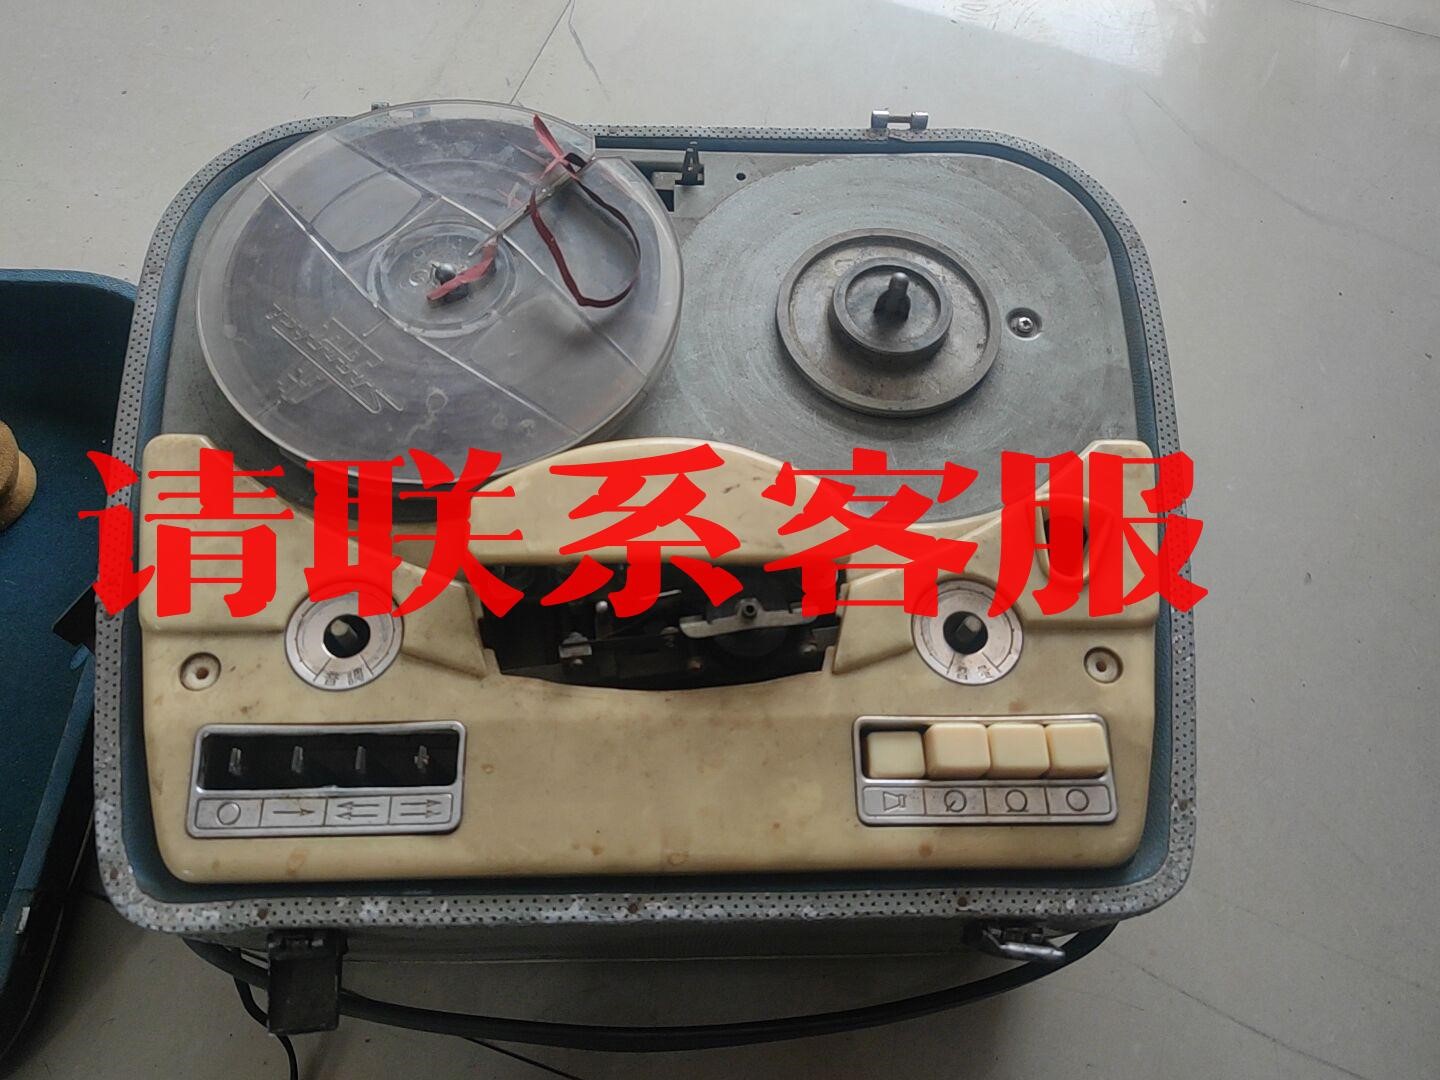 L601开盘机 上海录音器材厂 收来的 成色见图 好坏不知议价出售